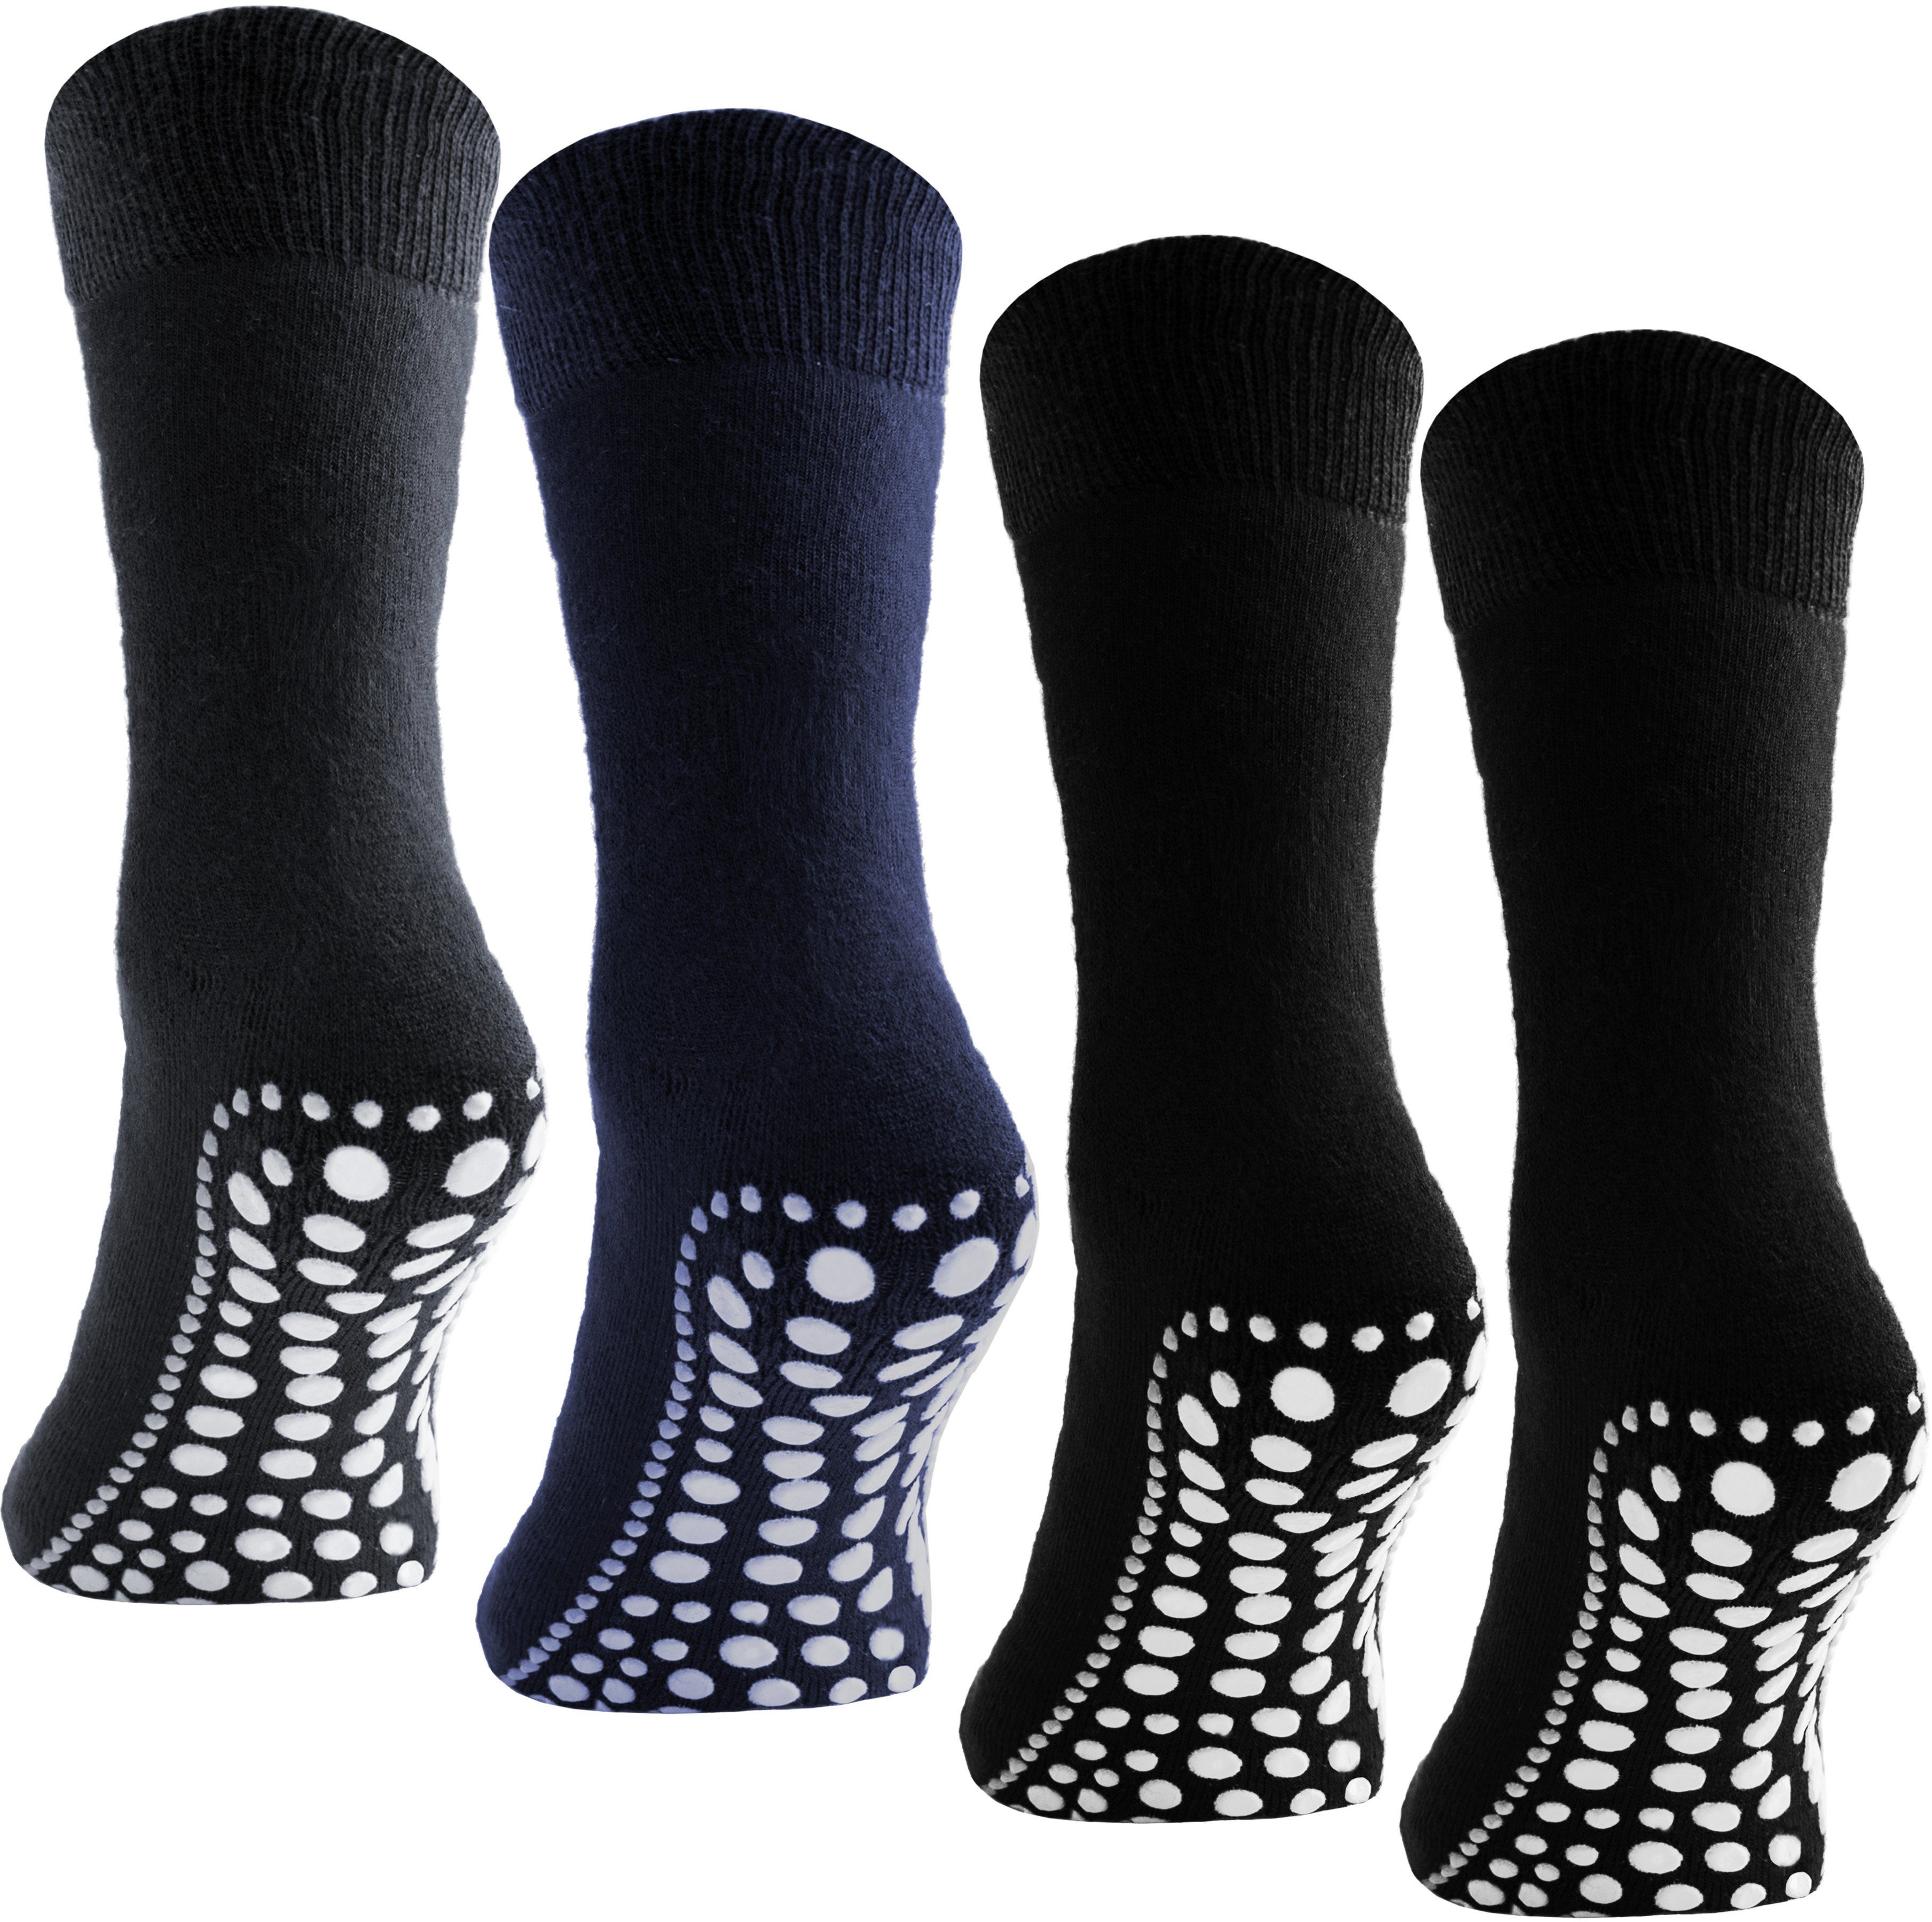 BRUBAKER ABS-Socken Unisex Haussocken (4-Paar, Baumwolle) Anti Rutsch Socken für Damen und Herren Schwarz, Grau und Blau | Stoppersocken